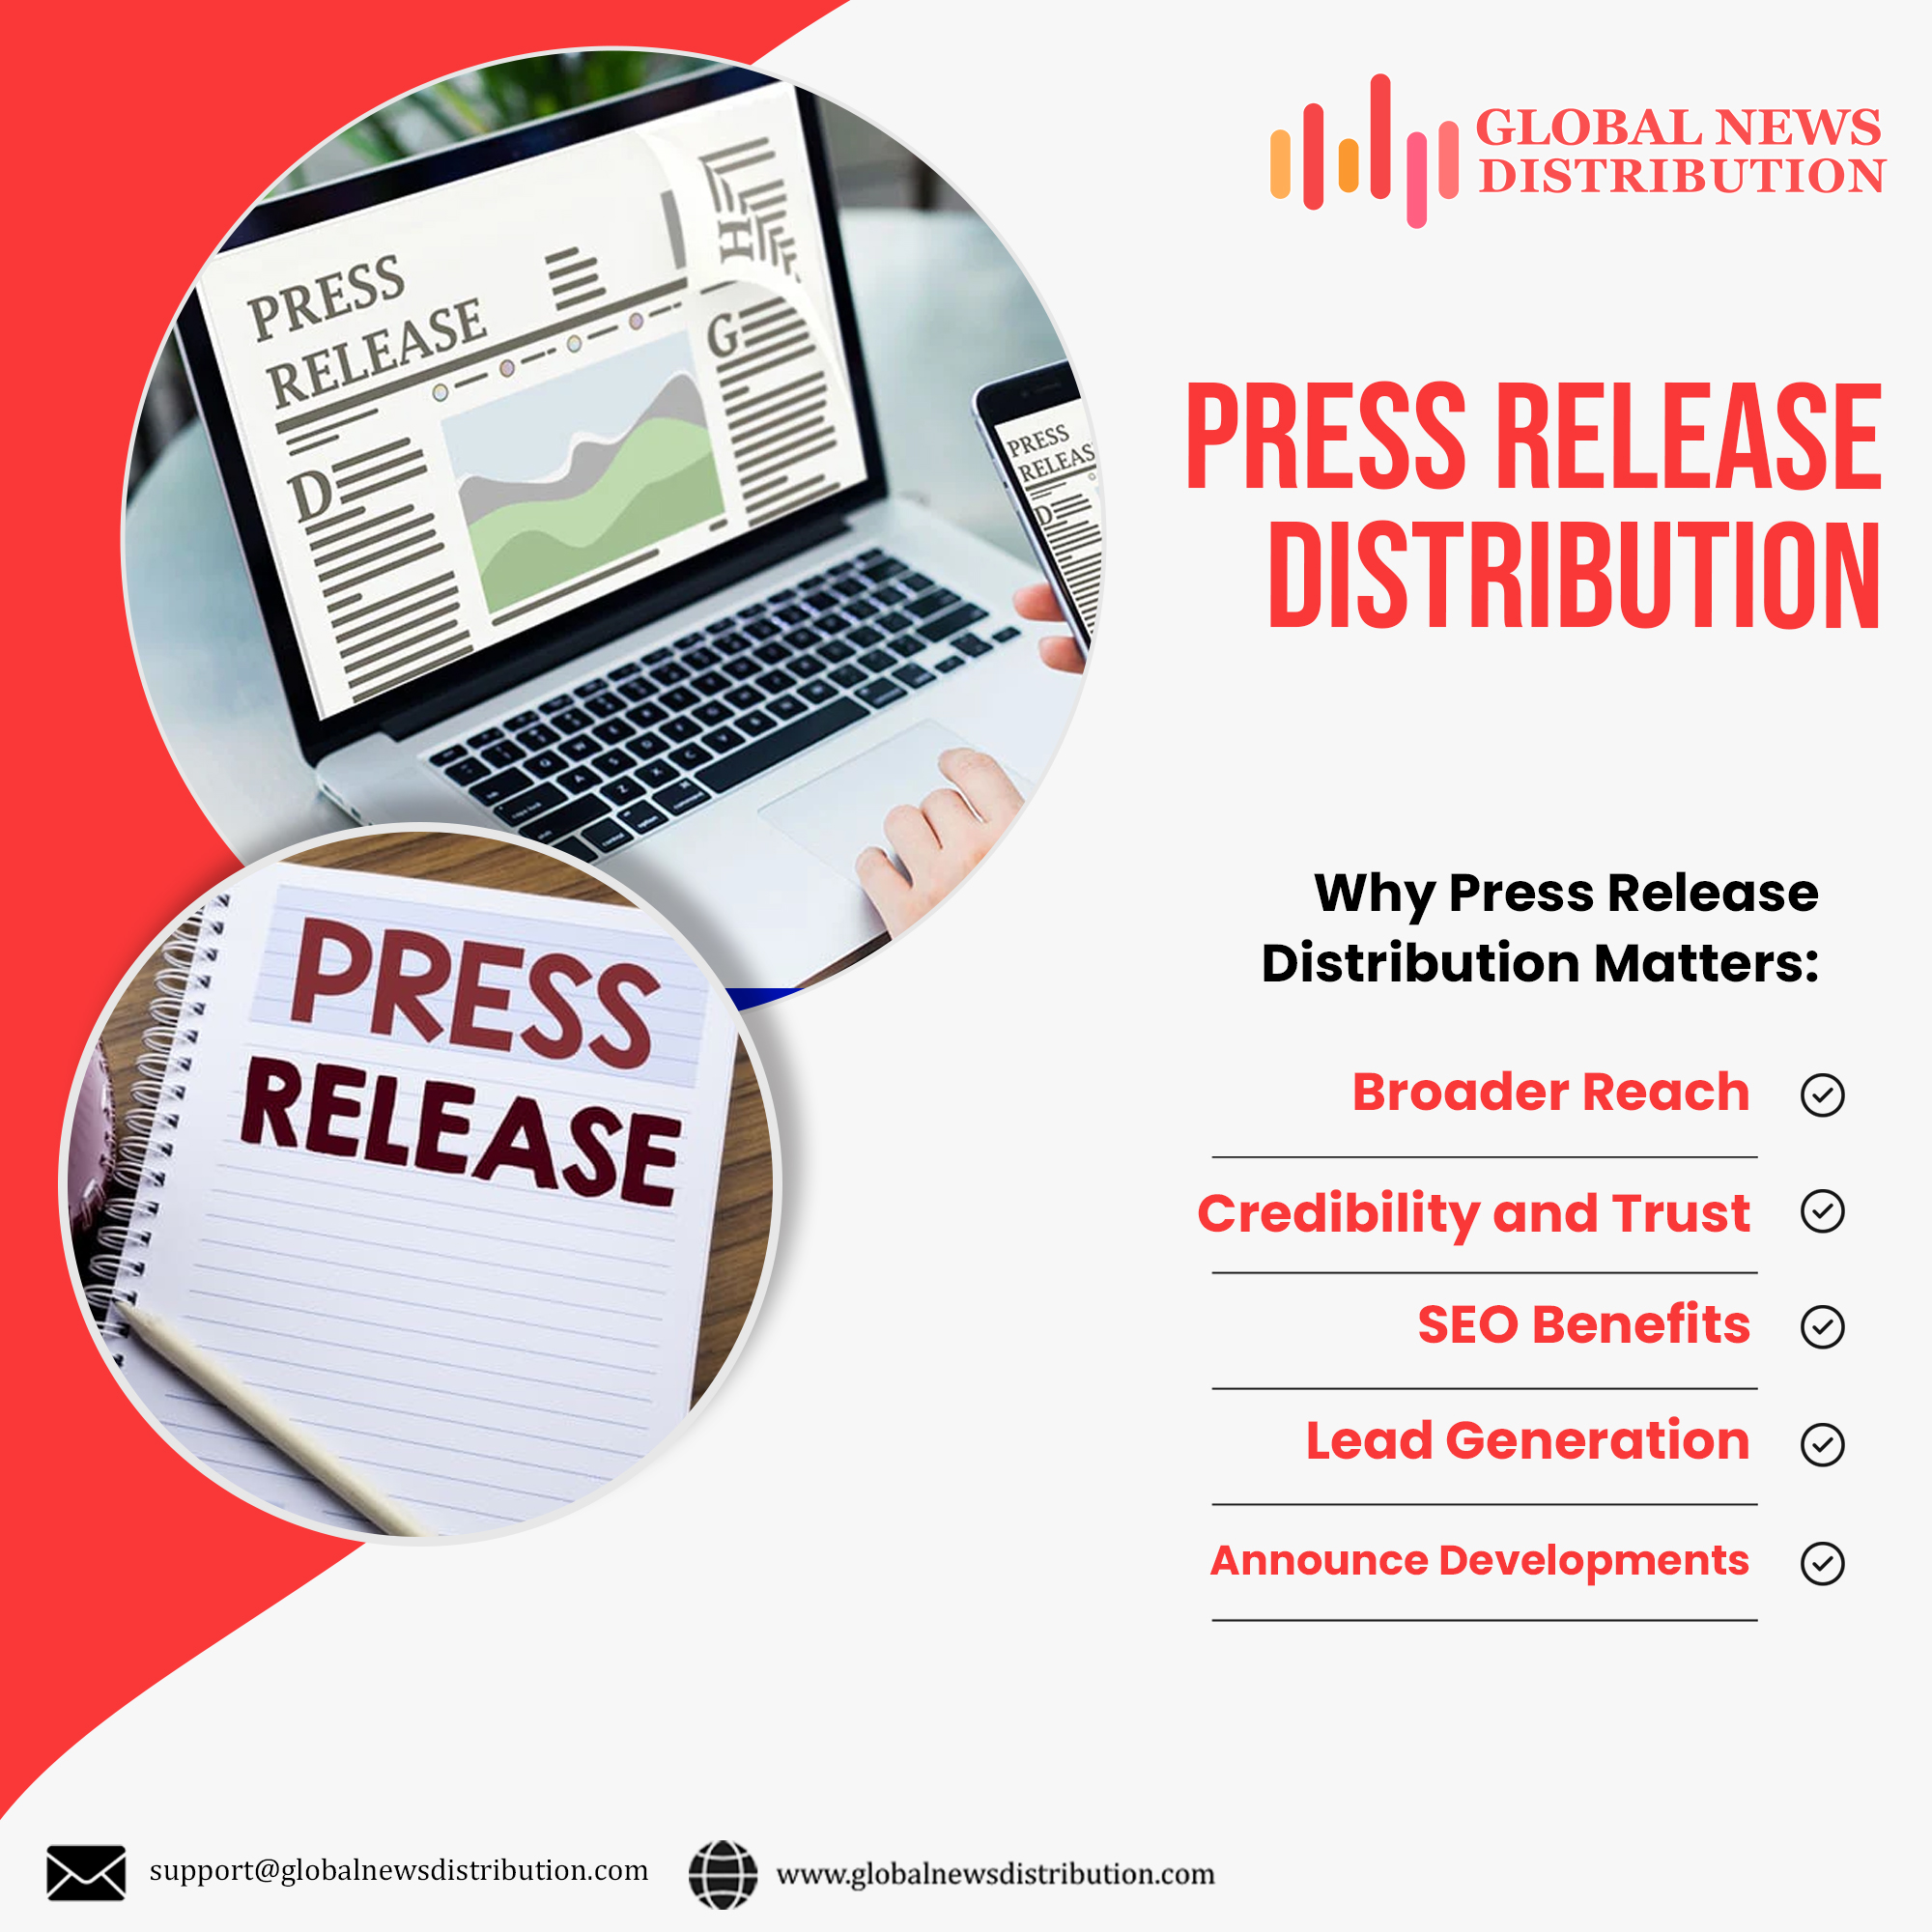 Global News Distribution